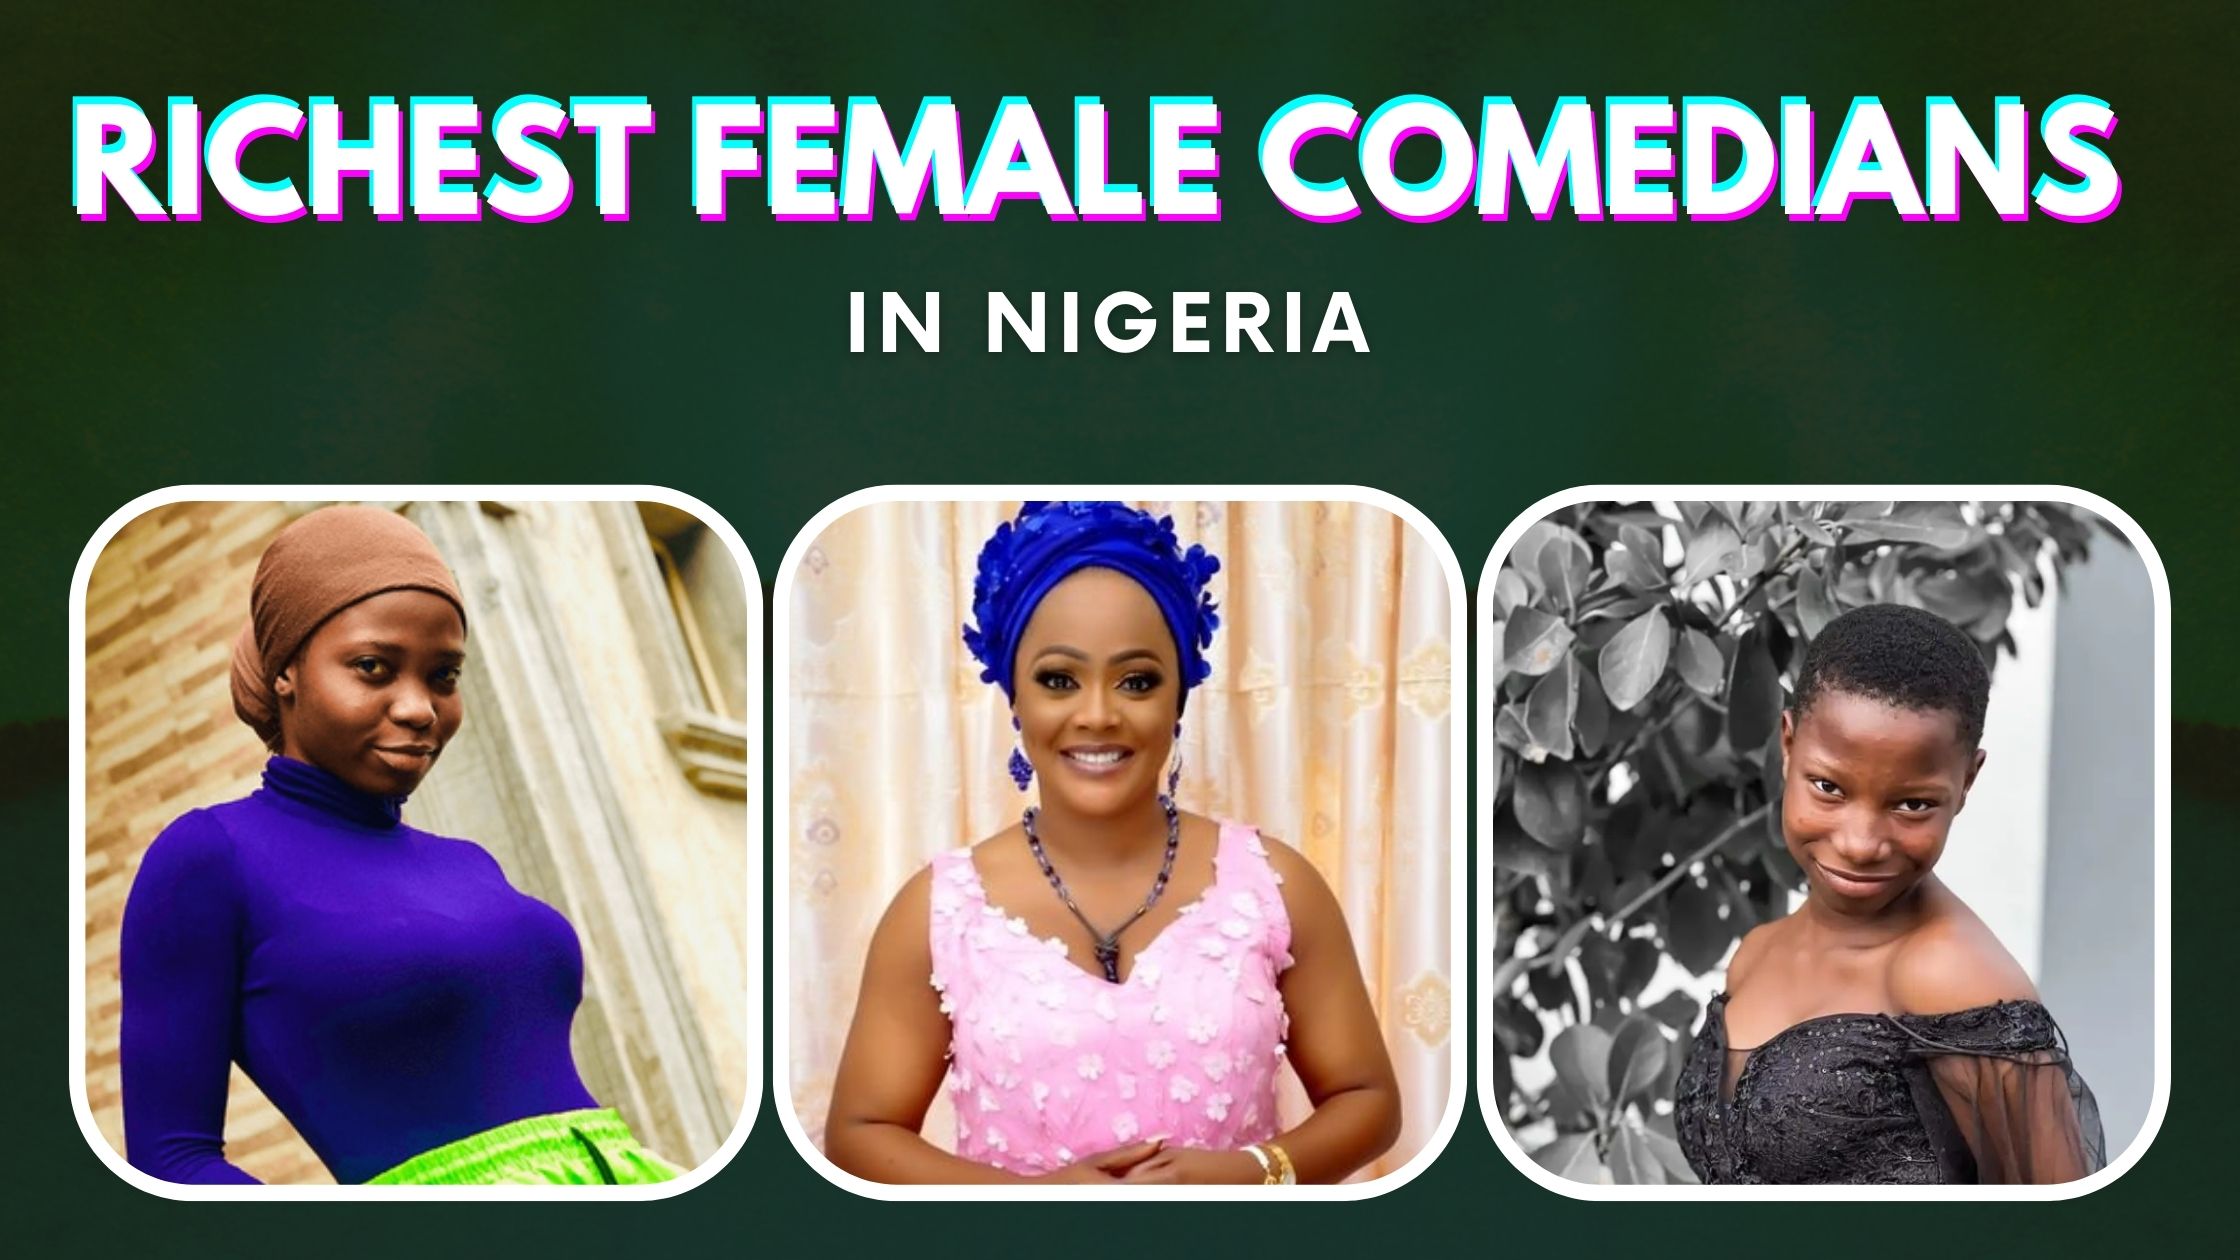 Top 10 Richest Female Comedians in Nigeria